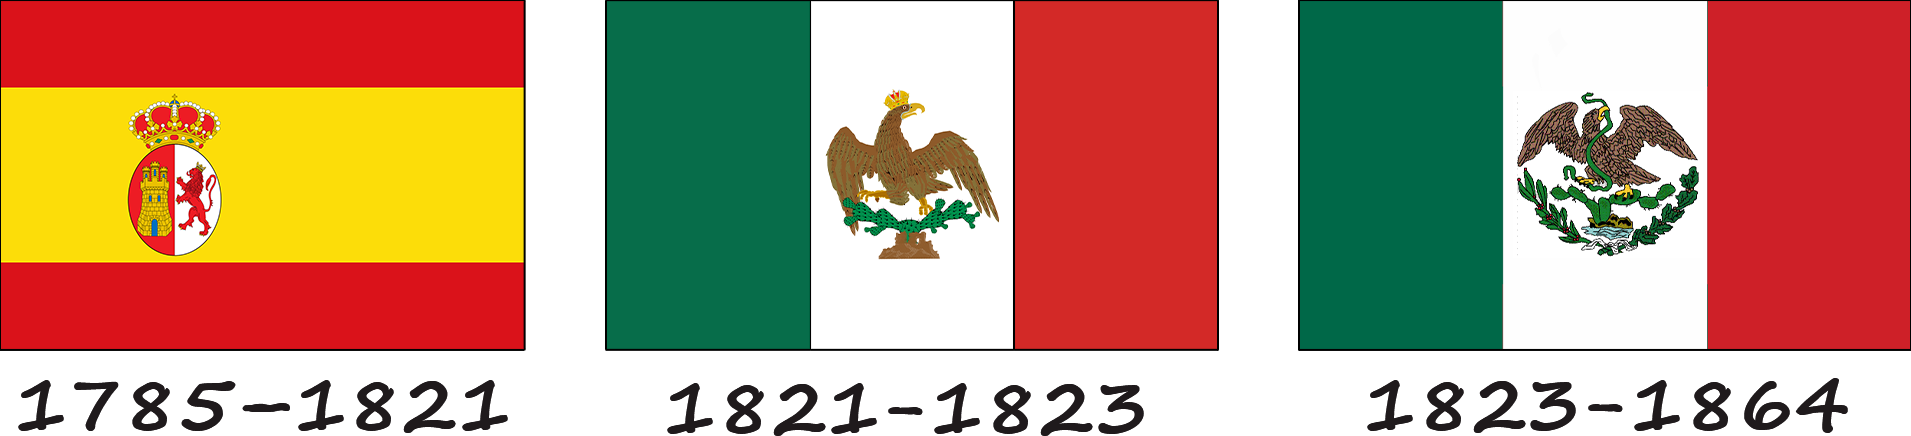 Histoire du drapeau mexicain